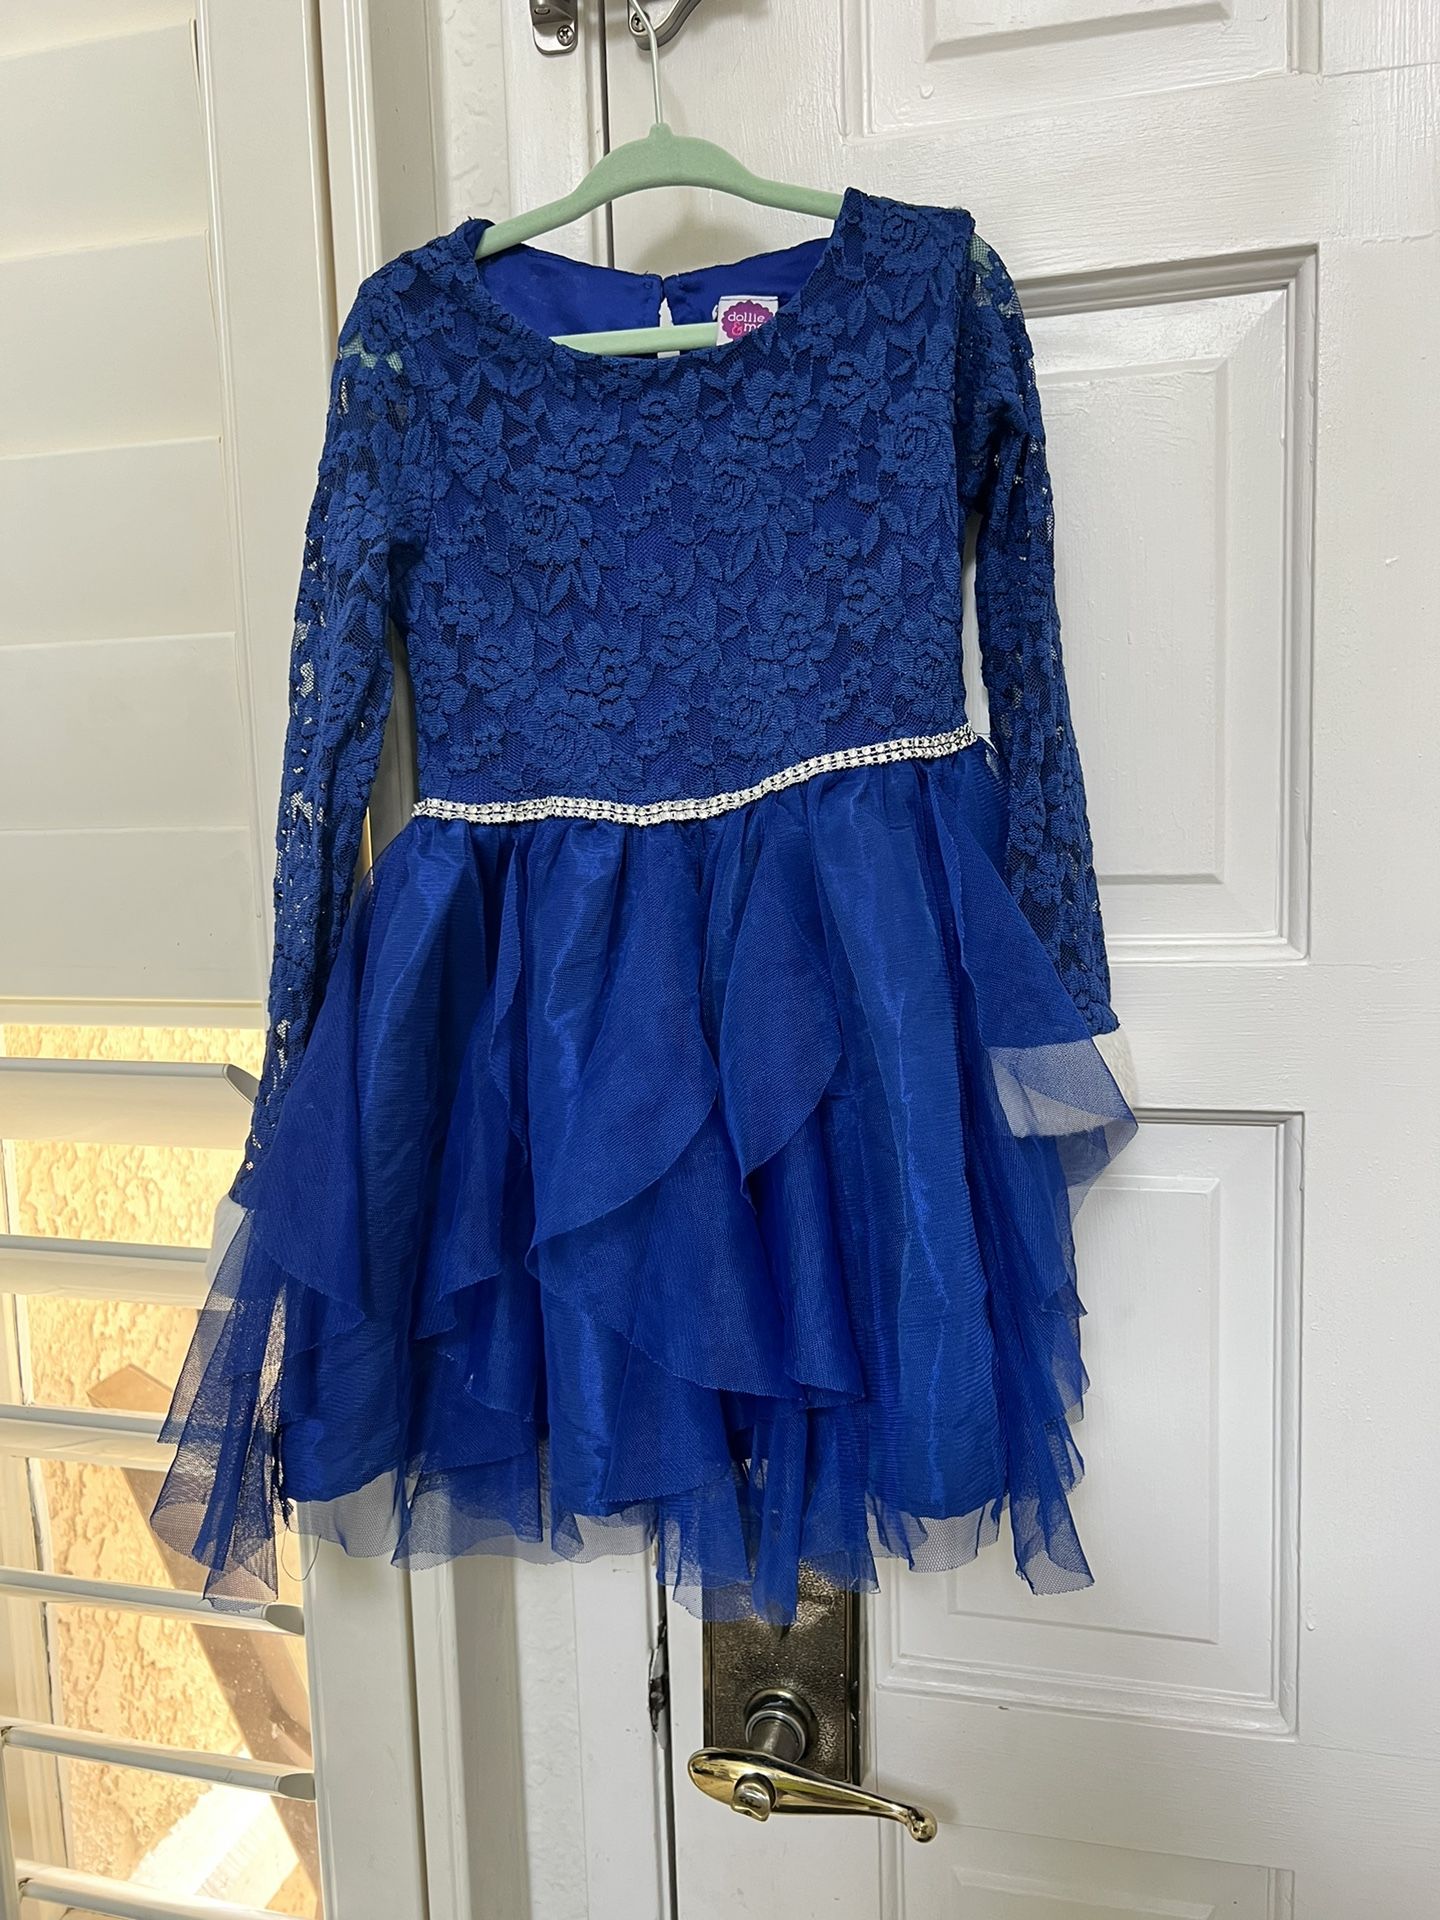 Elsa Play Dress 4t/ Blue 4t Dress